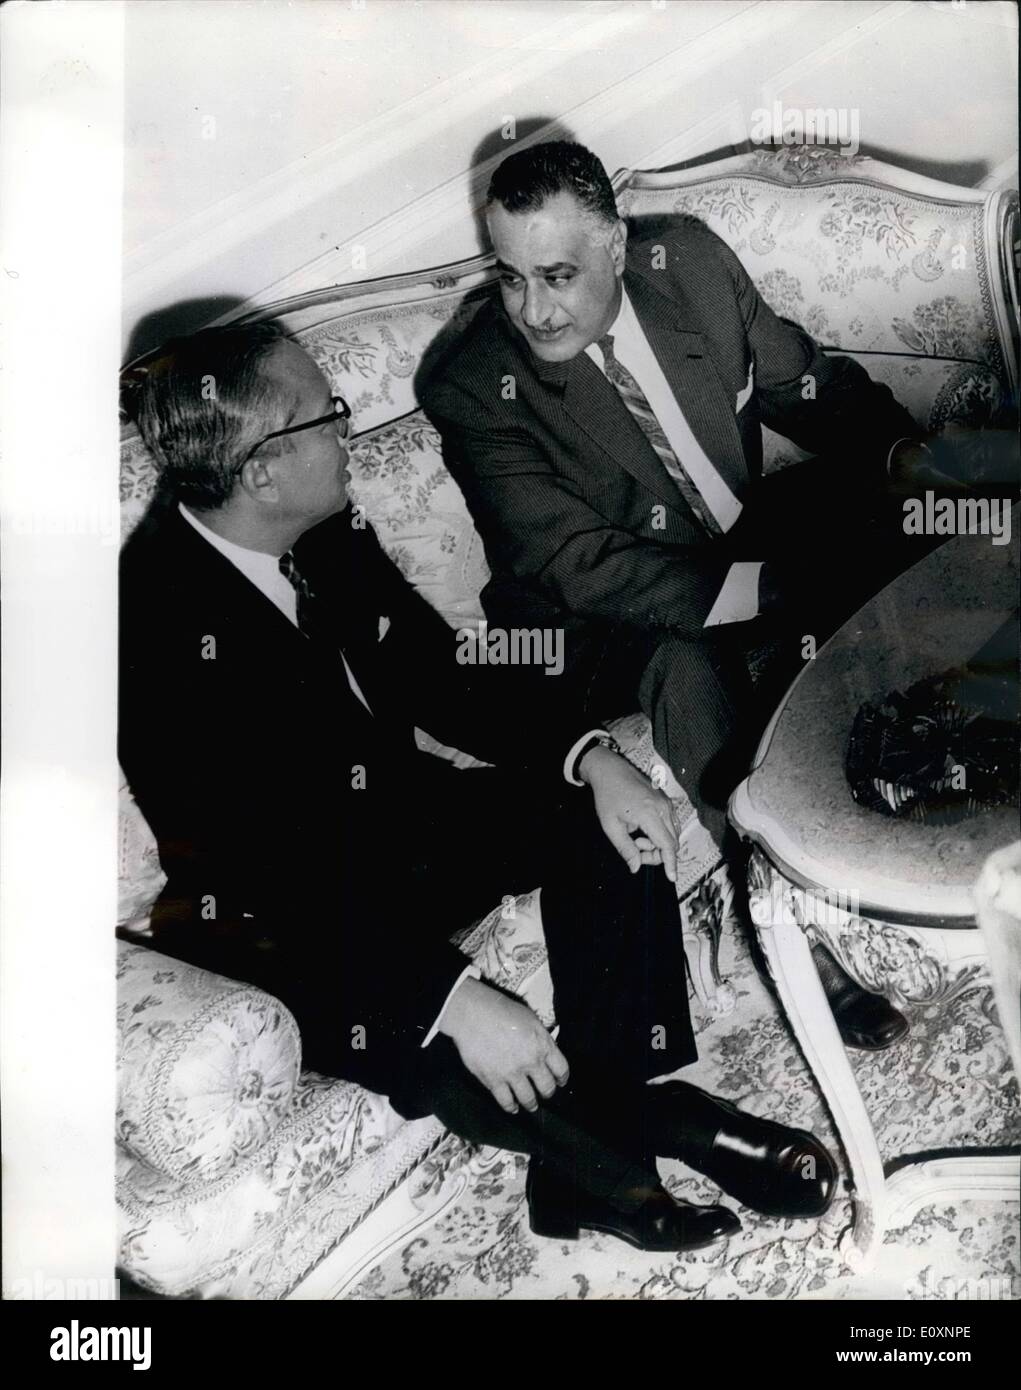 05 mai 1967 - U. Thant dans Tales avec le président Nasser ; Photo montre U Thant, le Secrétaire général des Nations Unies, qui a décidé de couper court à sa visite au Caire et de rentrer à New York aujourd'hui (jeudi), photographié hier avec le président Nasser, au cours de leurs pourparlers au Caire. Banque D'Images